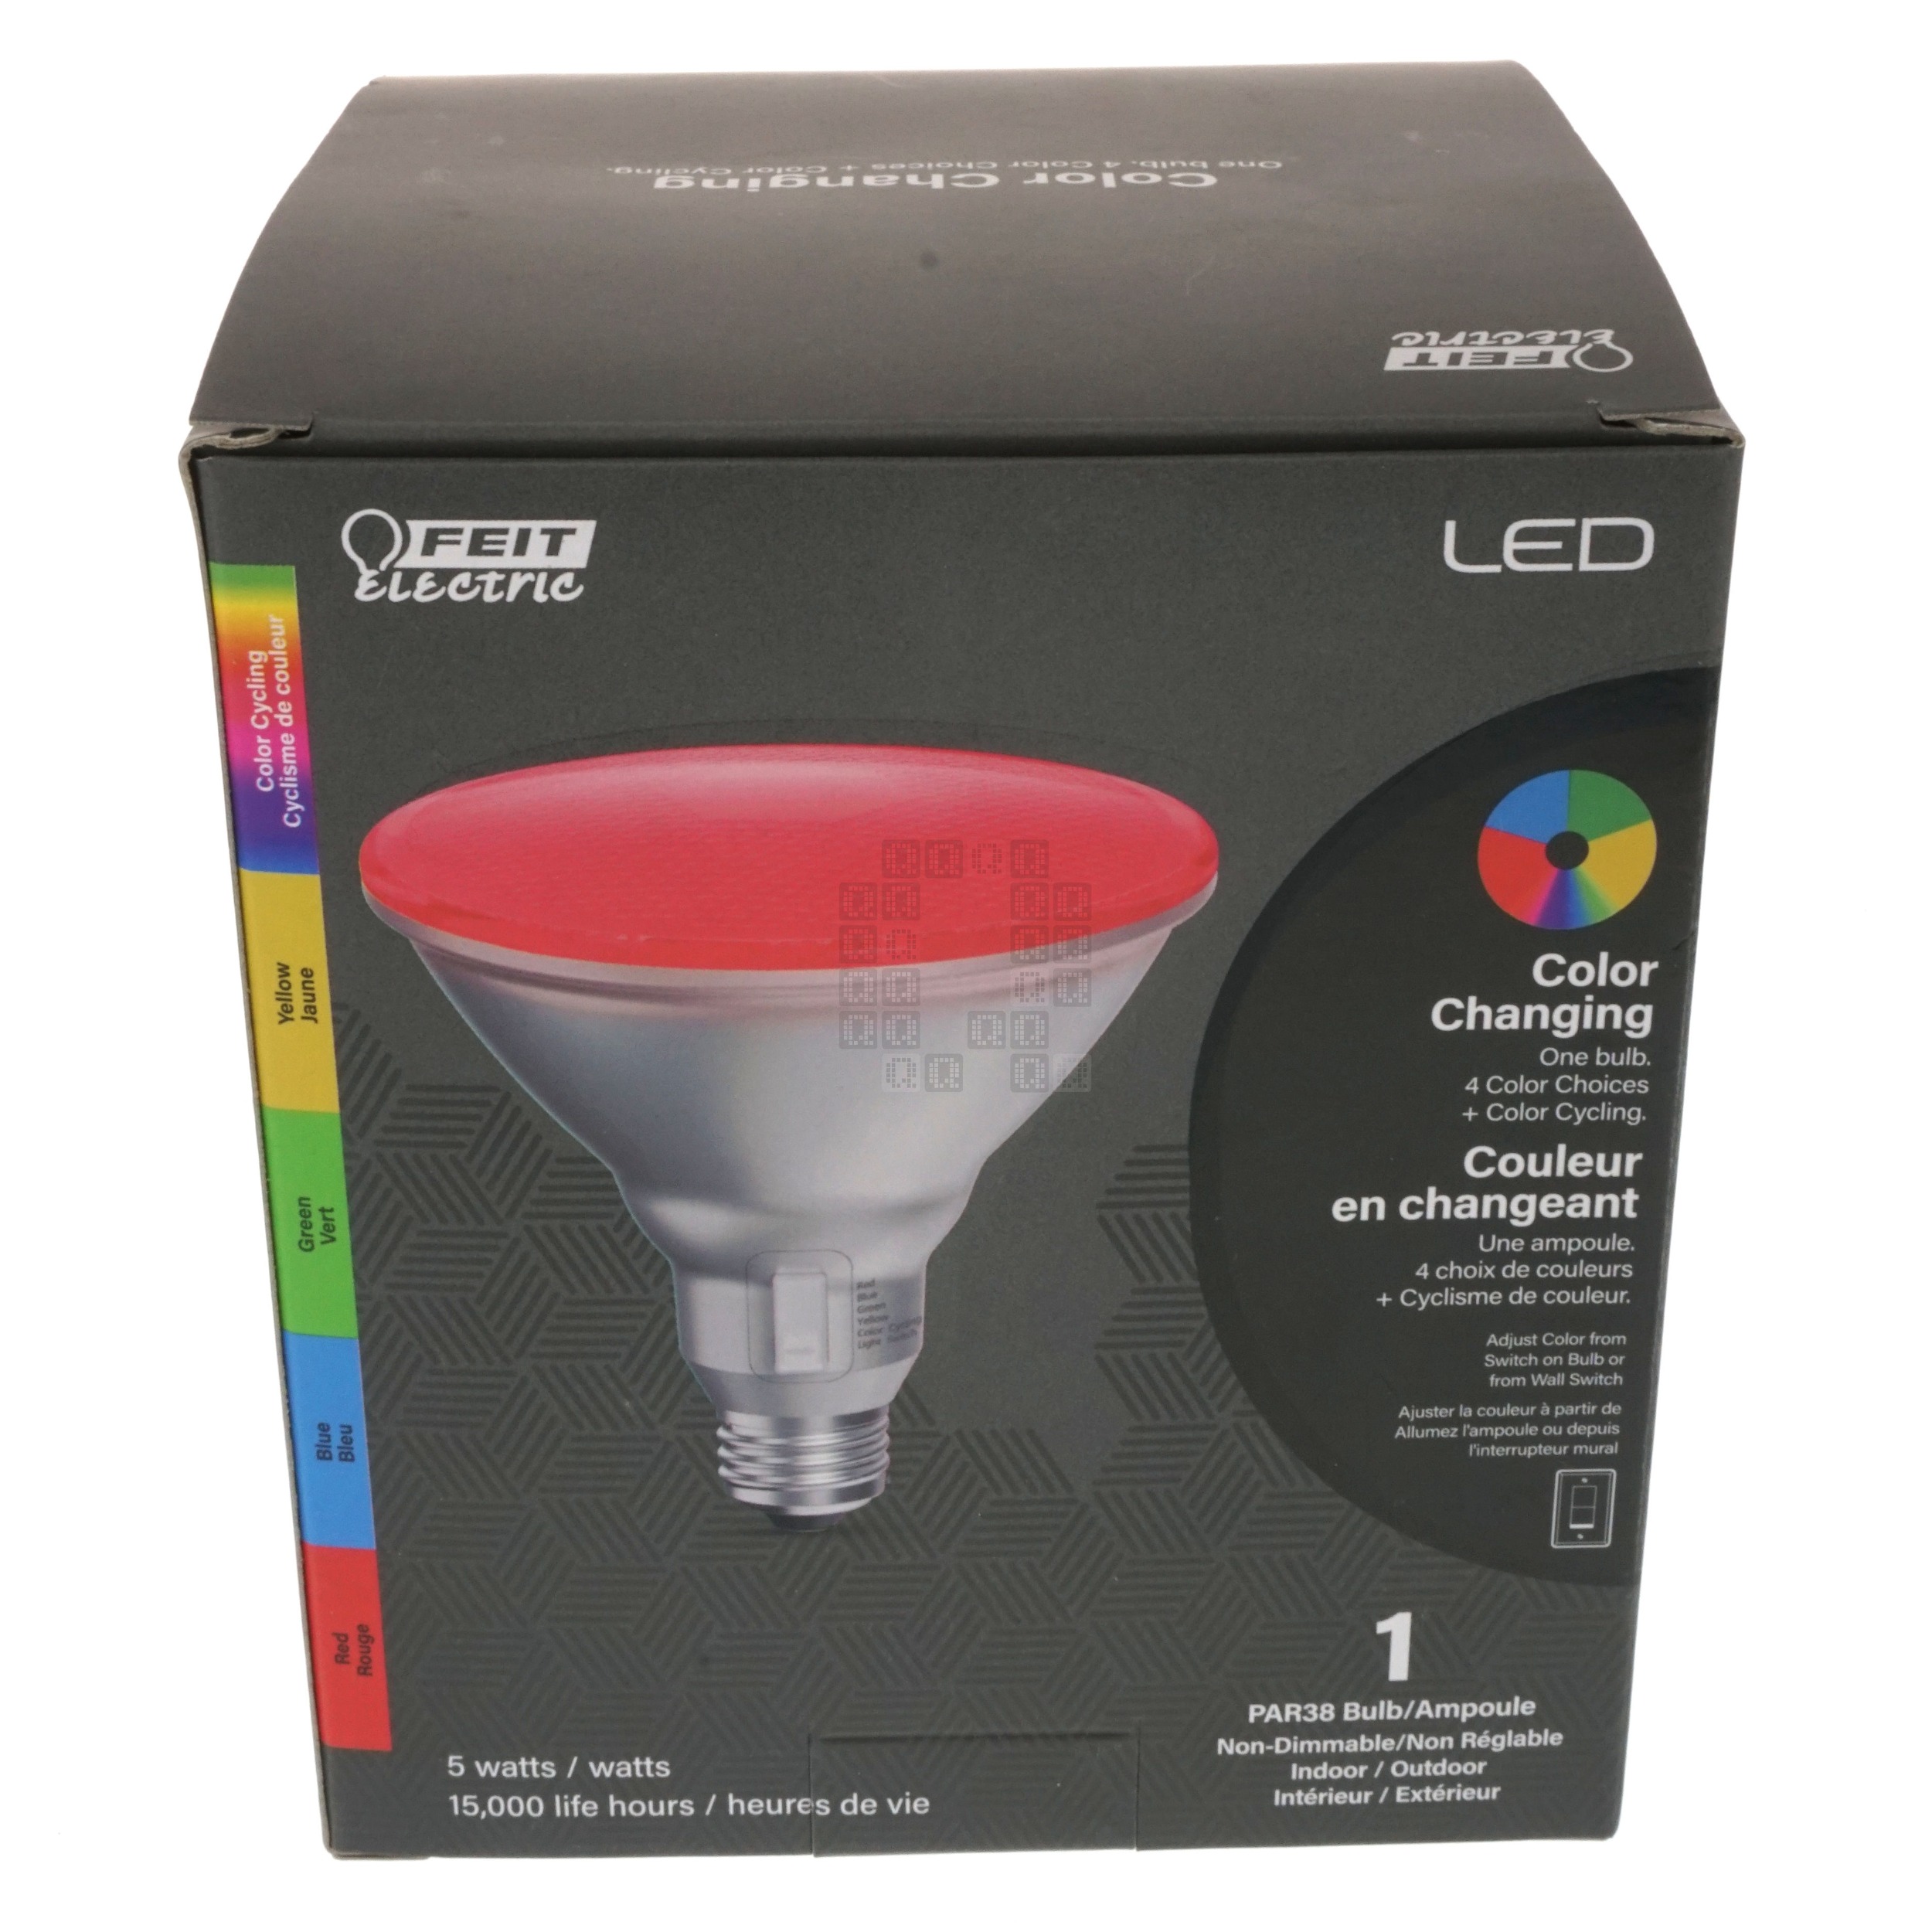 FEIT Electric 0388694 Indoor/Outdoor PAR38 Color Changing Bulb, 5 Watt, 15,000 Hour